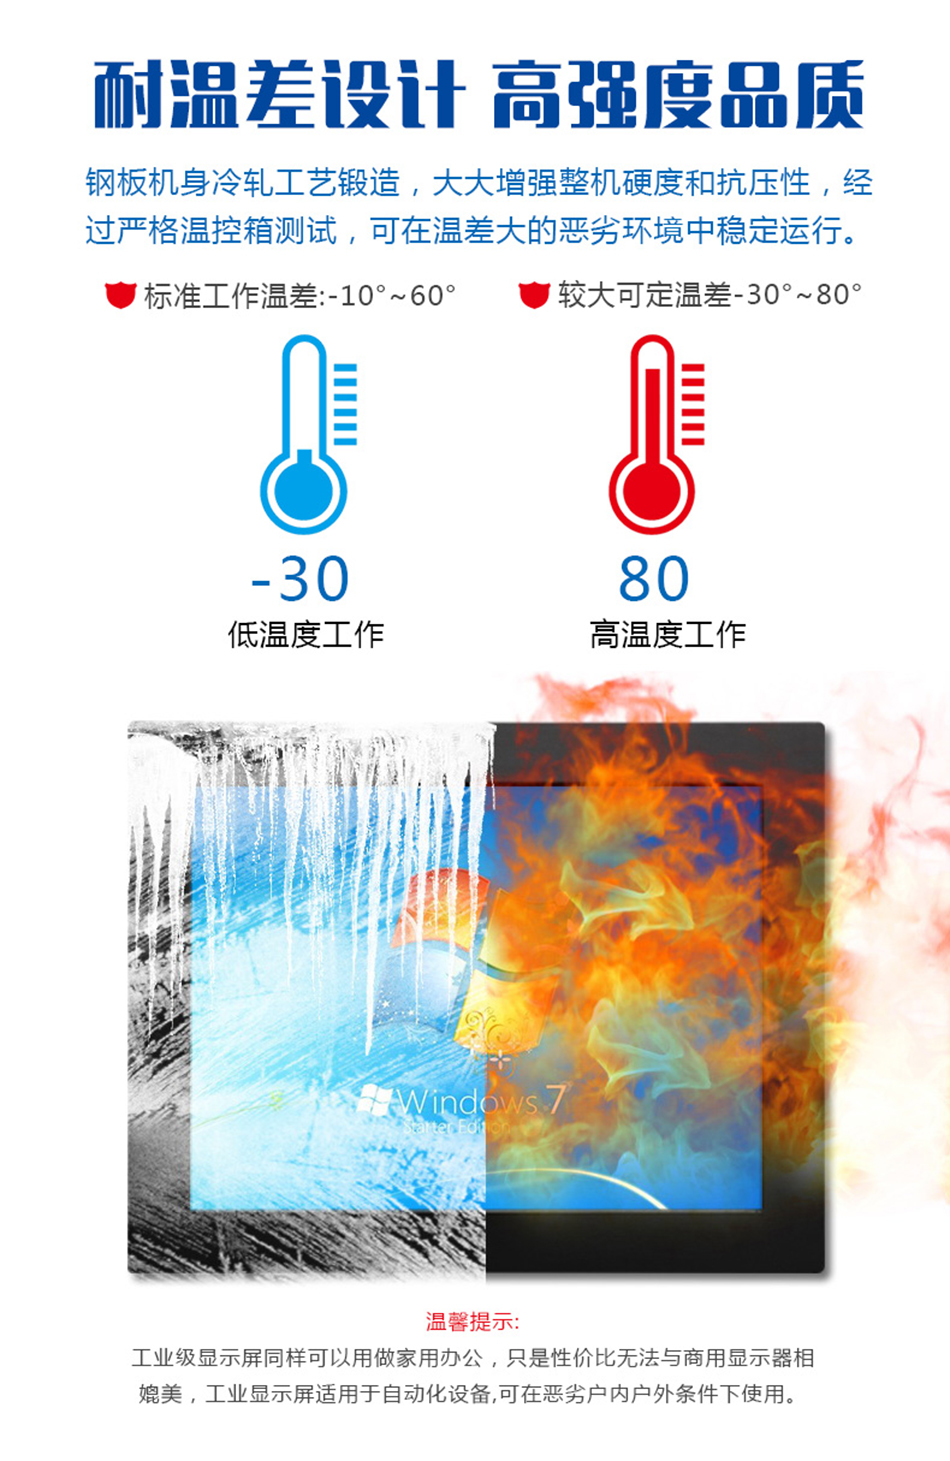 广州晶笛诺-工控触摸一体机耐温差设计高强度品质